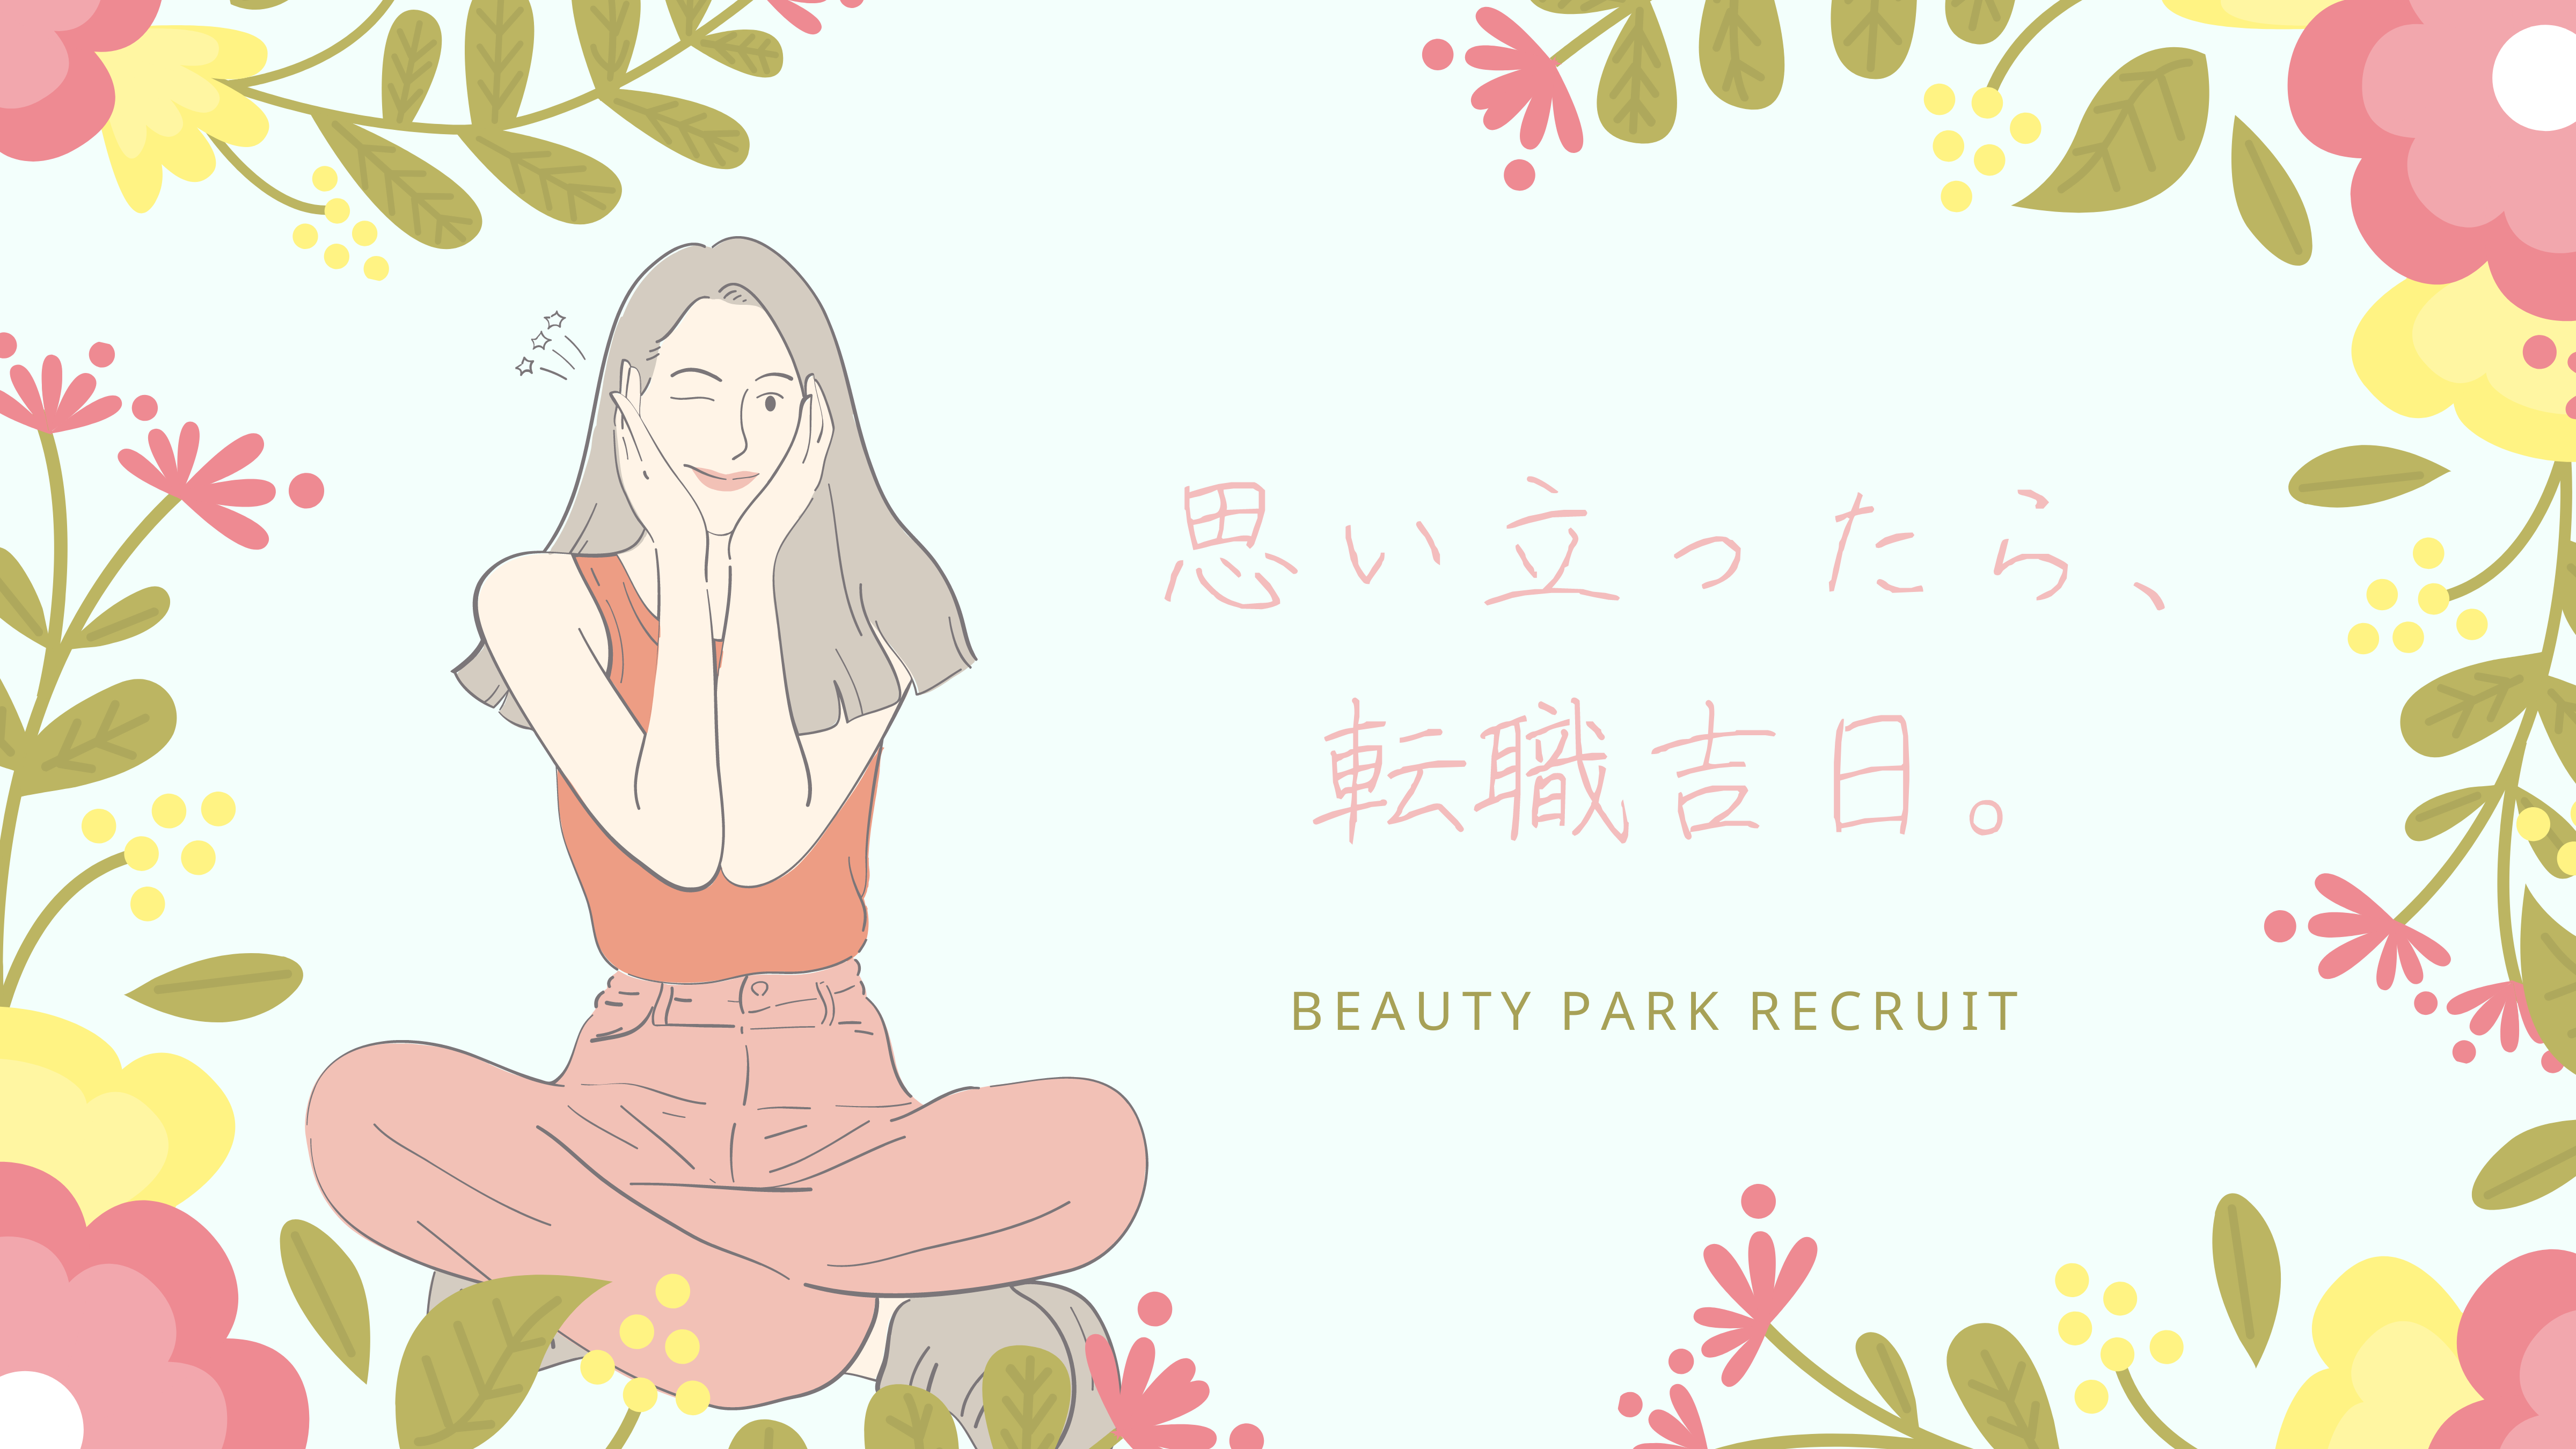 Beauty Park Recruit